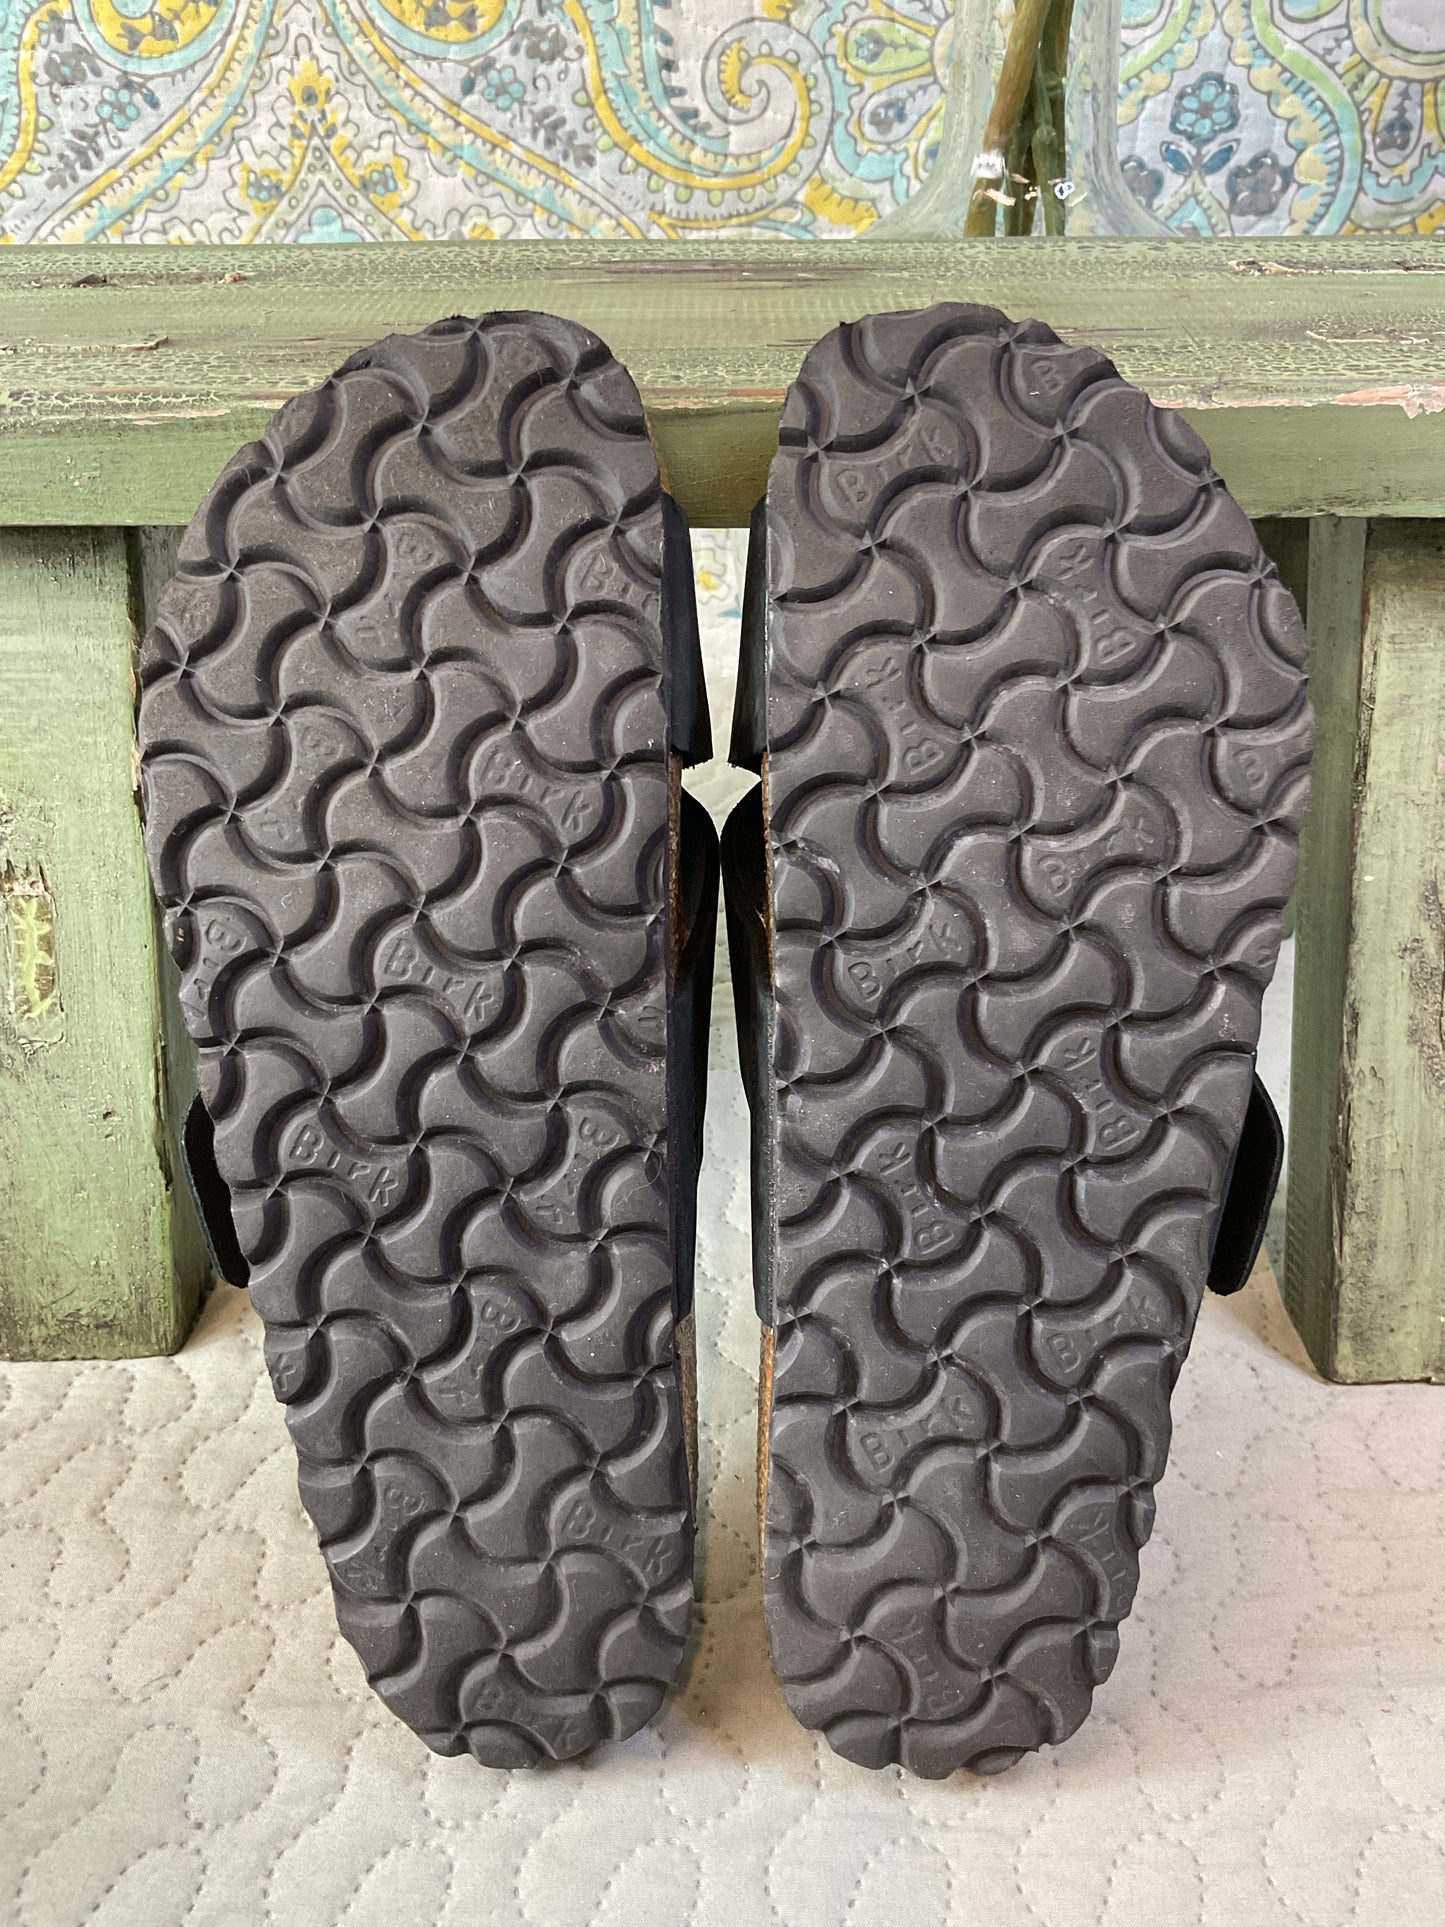 Birkenstocks Black & Brown Sandals, Size 37, Sold Separately